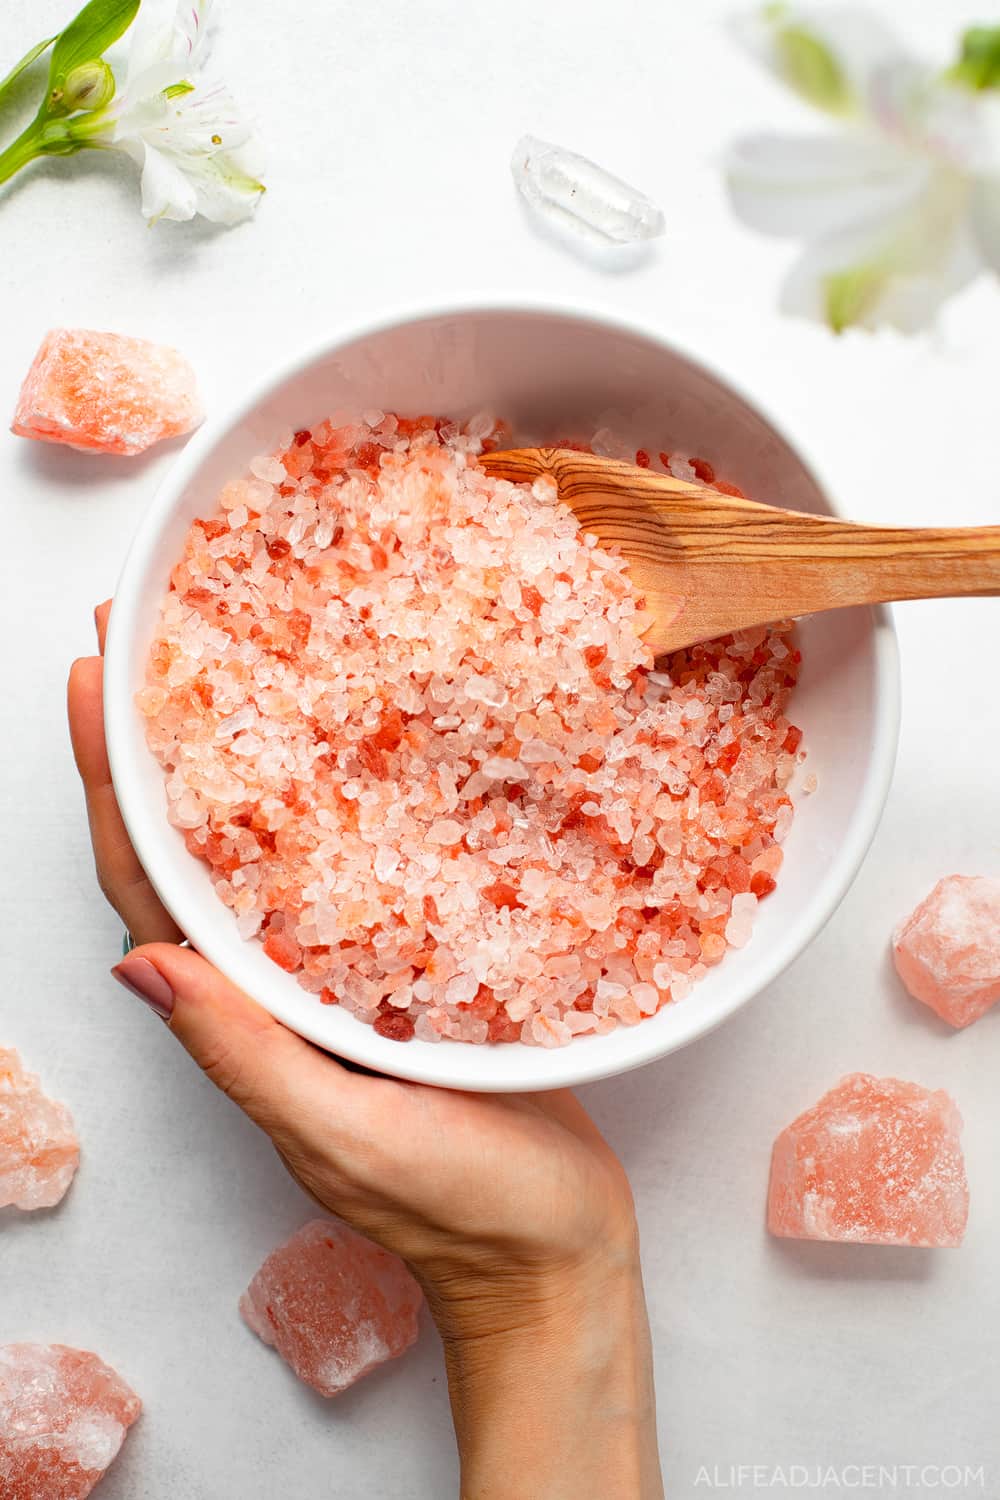 How to make pink Himalayan bath salts – mixing pink salt in mixing bowl